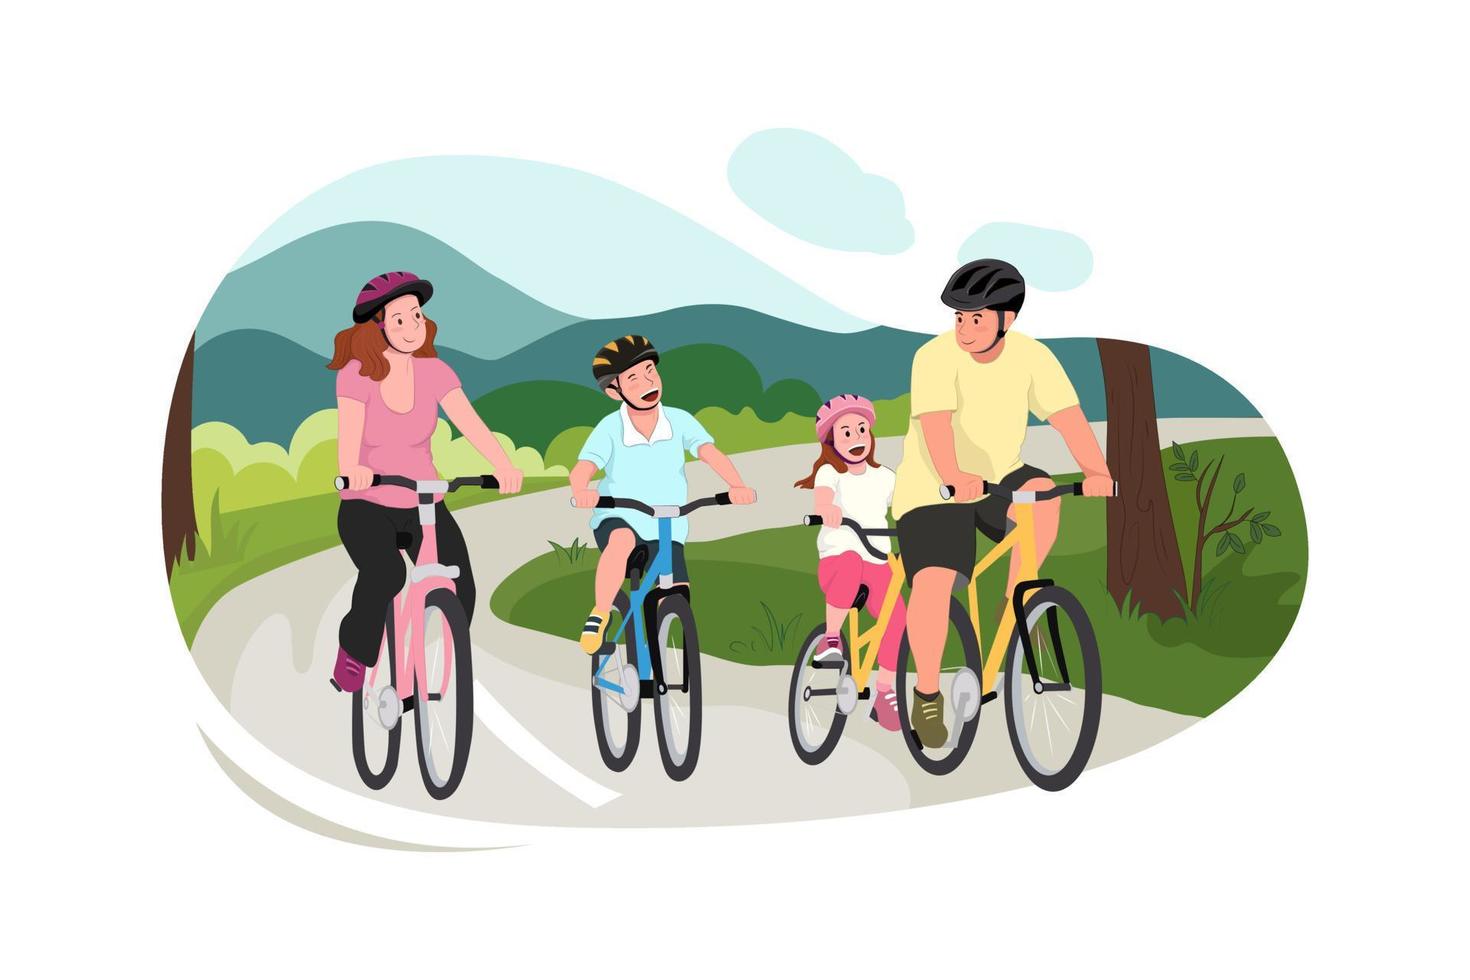 pappa syskon mamma med småbarn cyklar. platt vektorillustration på far, syskon, mamma med småbarn som cyklar. familj sport och rekreation konceptdesign vektor